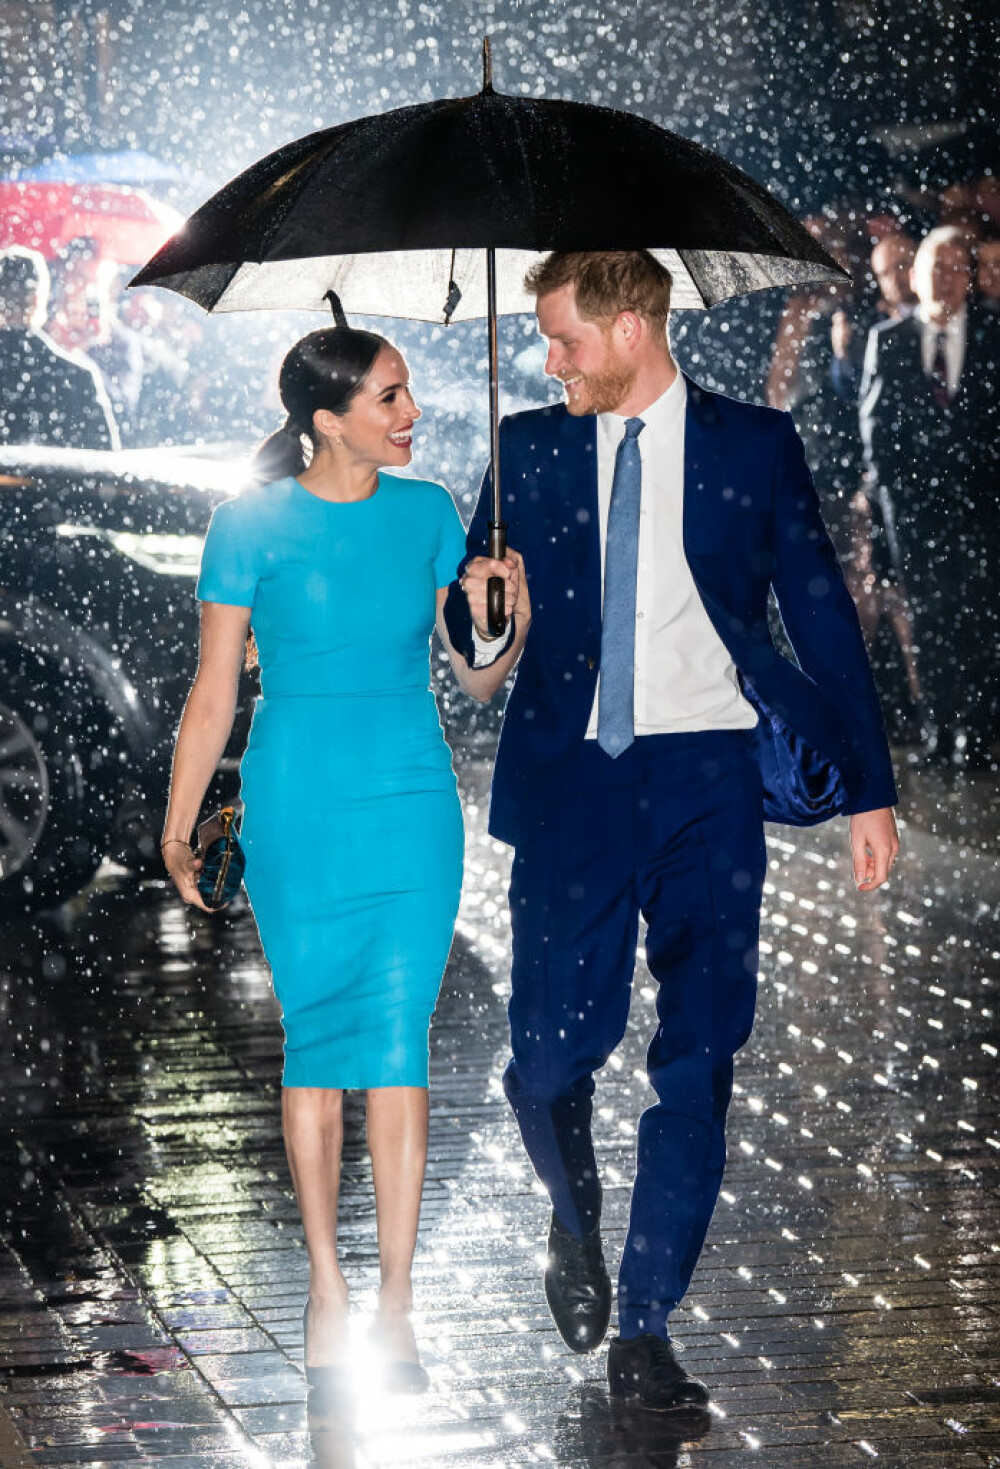 Imaginea cu Harry și Meghan în ploaie, sub umbrelă, a făcut înconjurul lumii - Imaginea 10